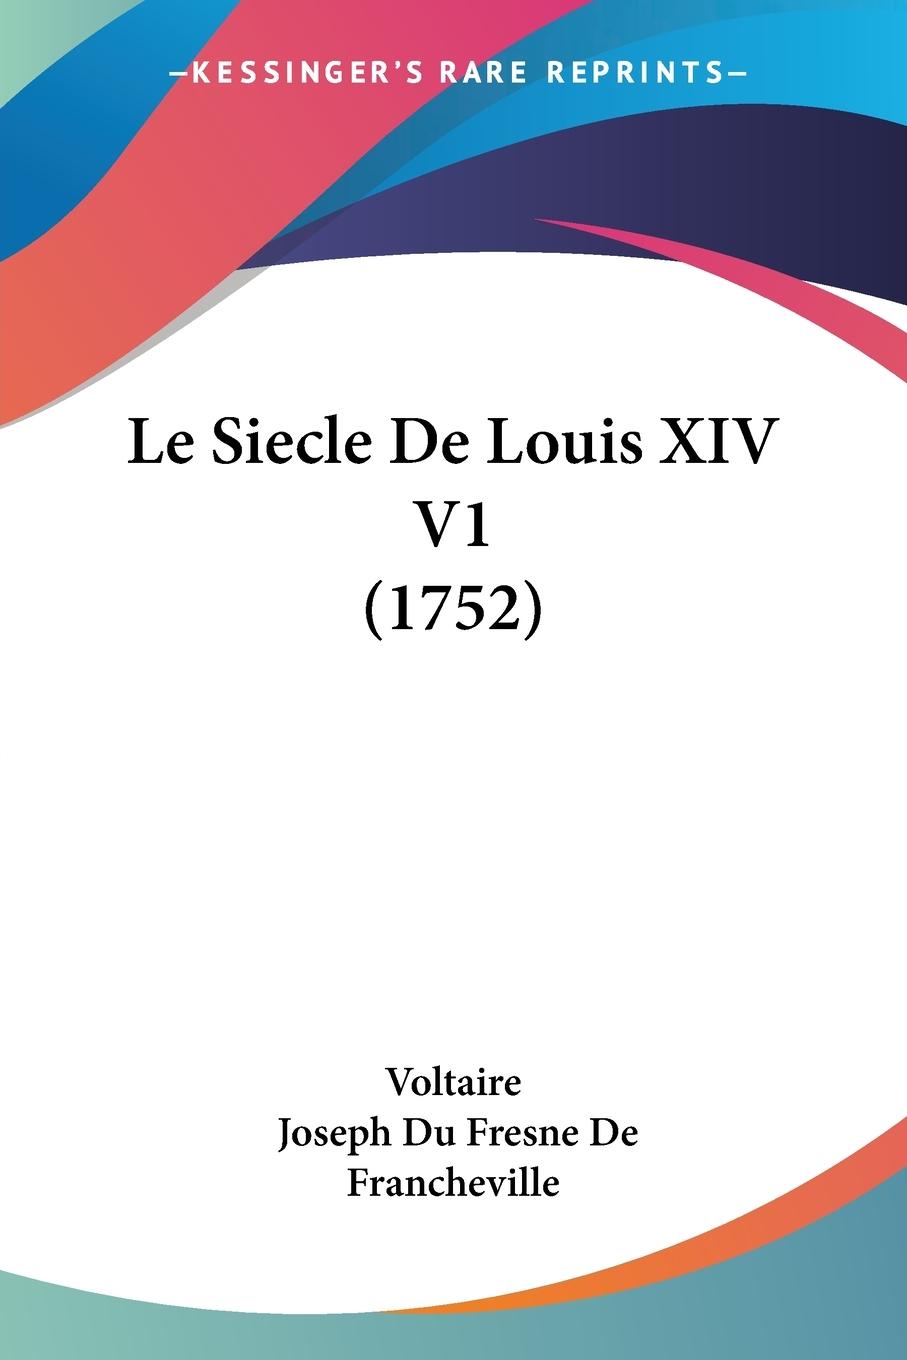 Le Siecle De Louis XIV V1 (1752) - Voltaire Francheville, Joseph Du Fresne De